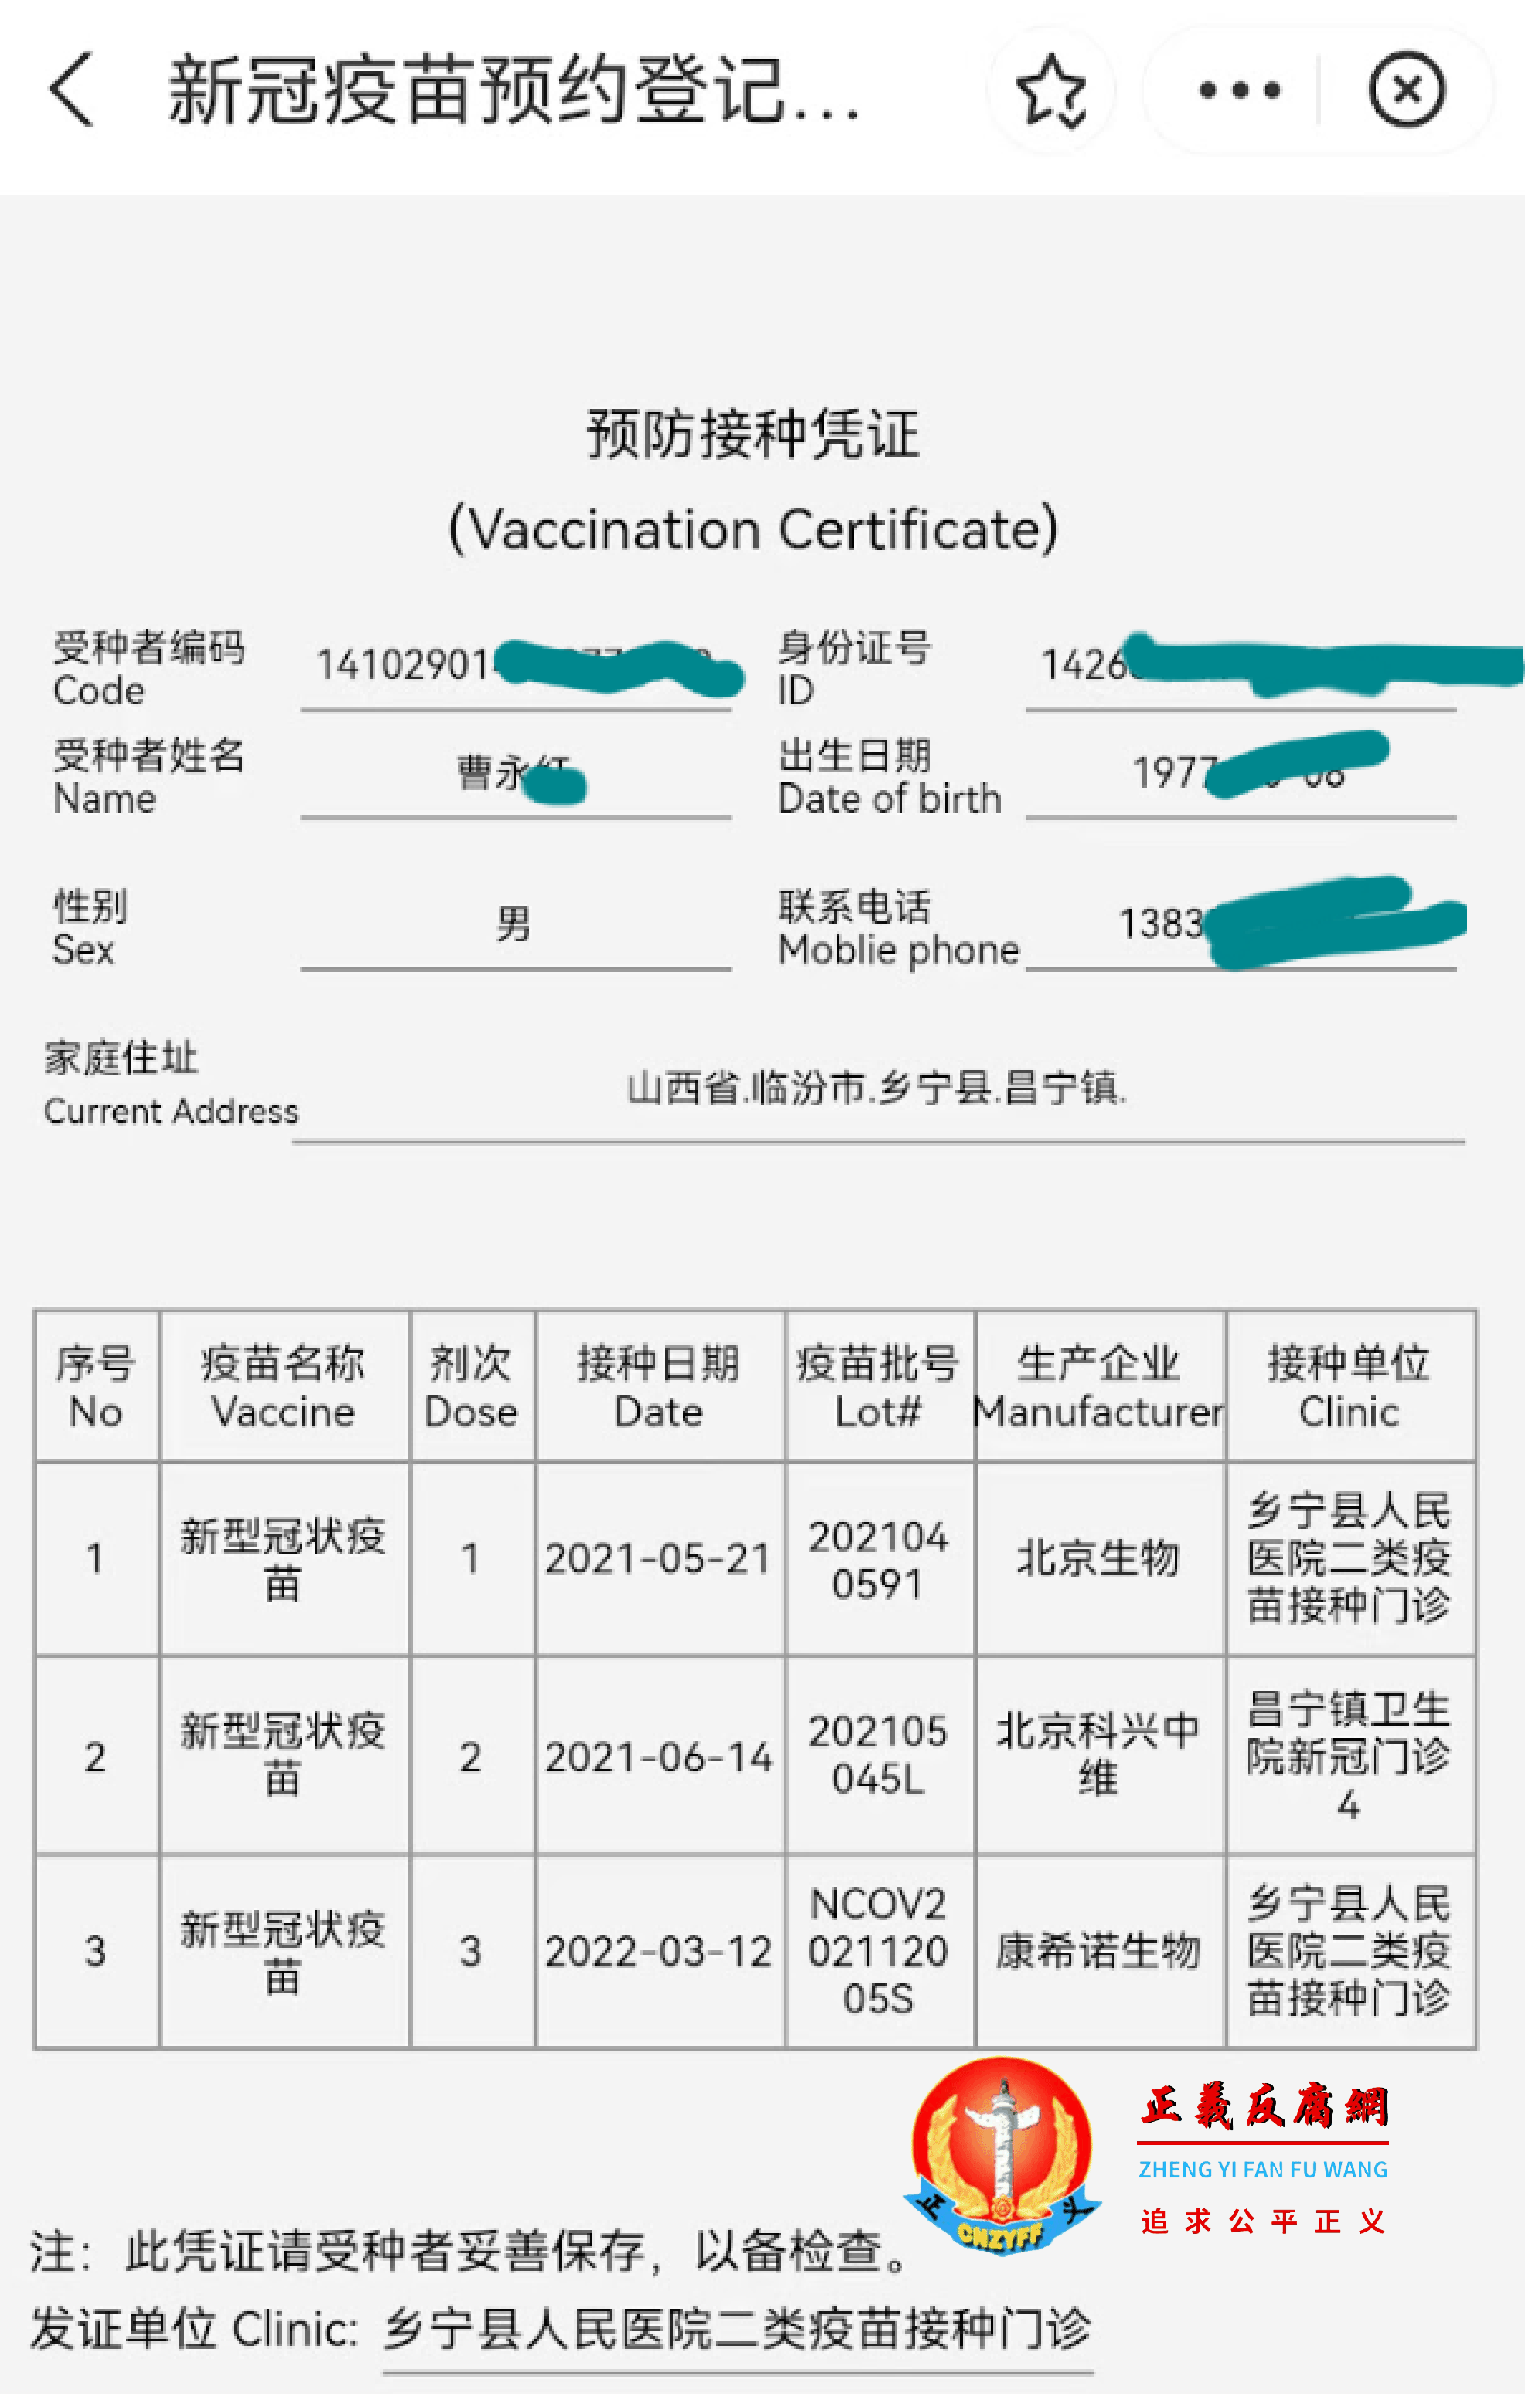 新冠疫苗预约登记《预防接种凭证》，发证单位：乡宁县人民医院二类疫苗接种门诊.png